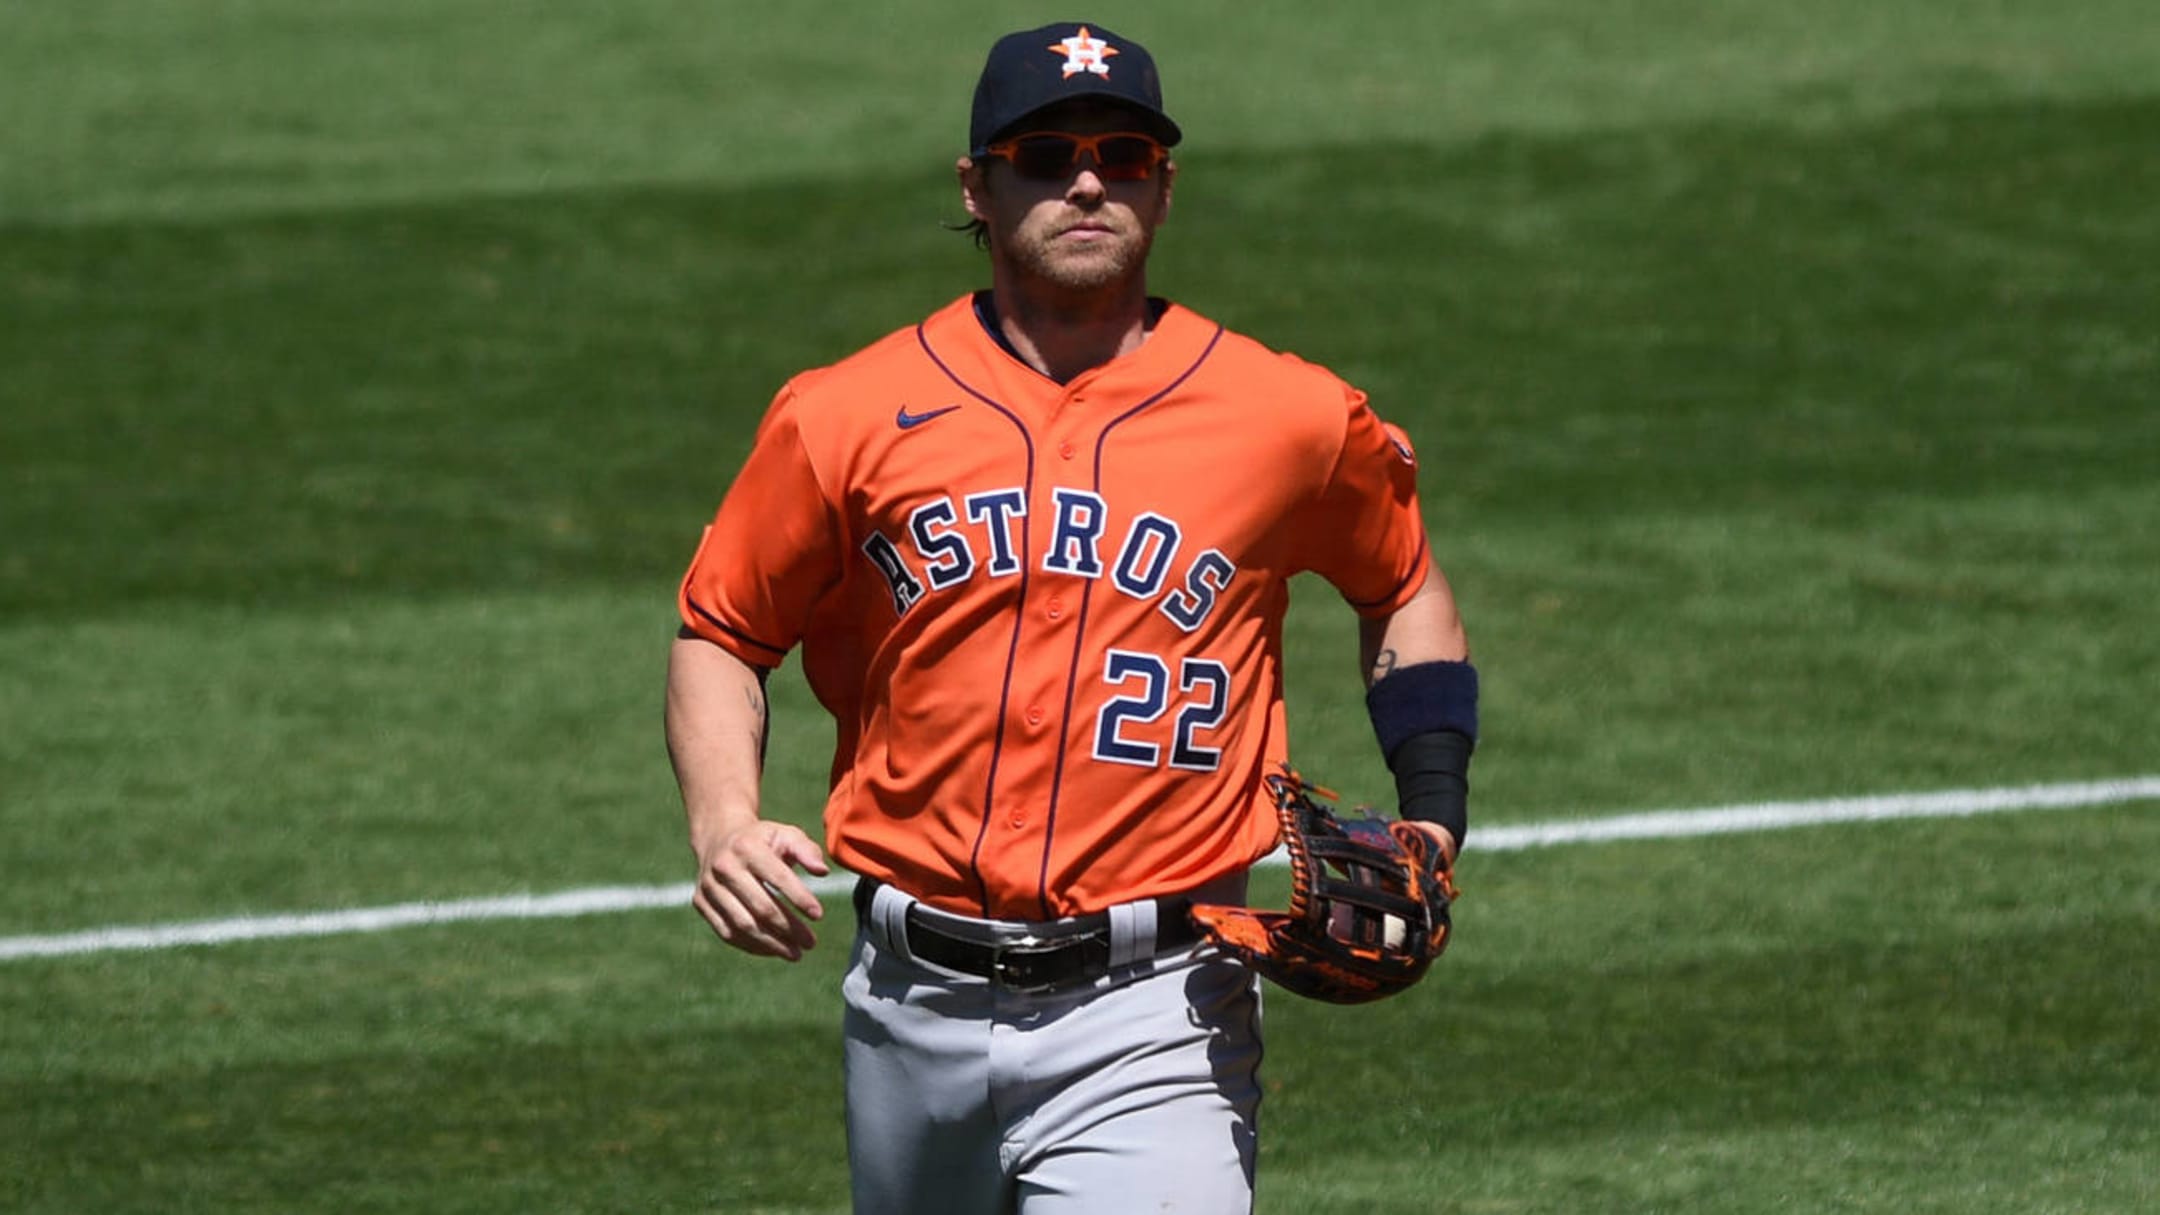  2019 Topps #531 Josh Reddick Houston Astros Baseball